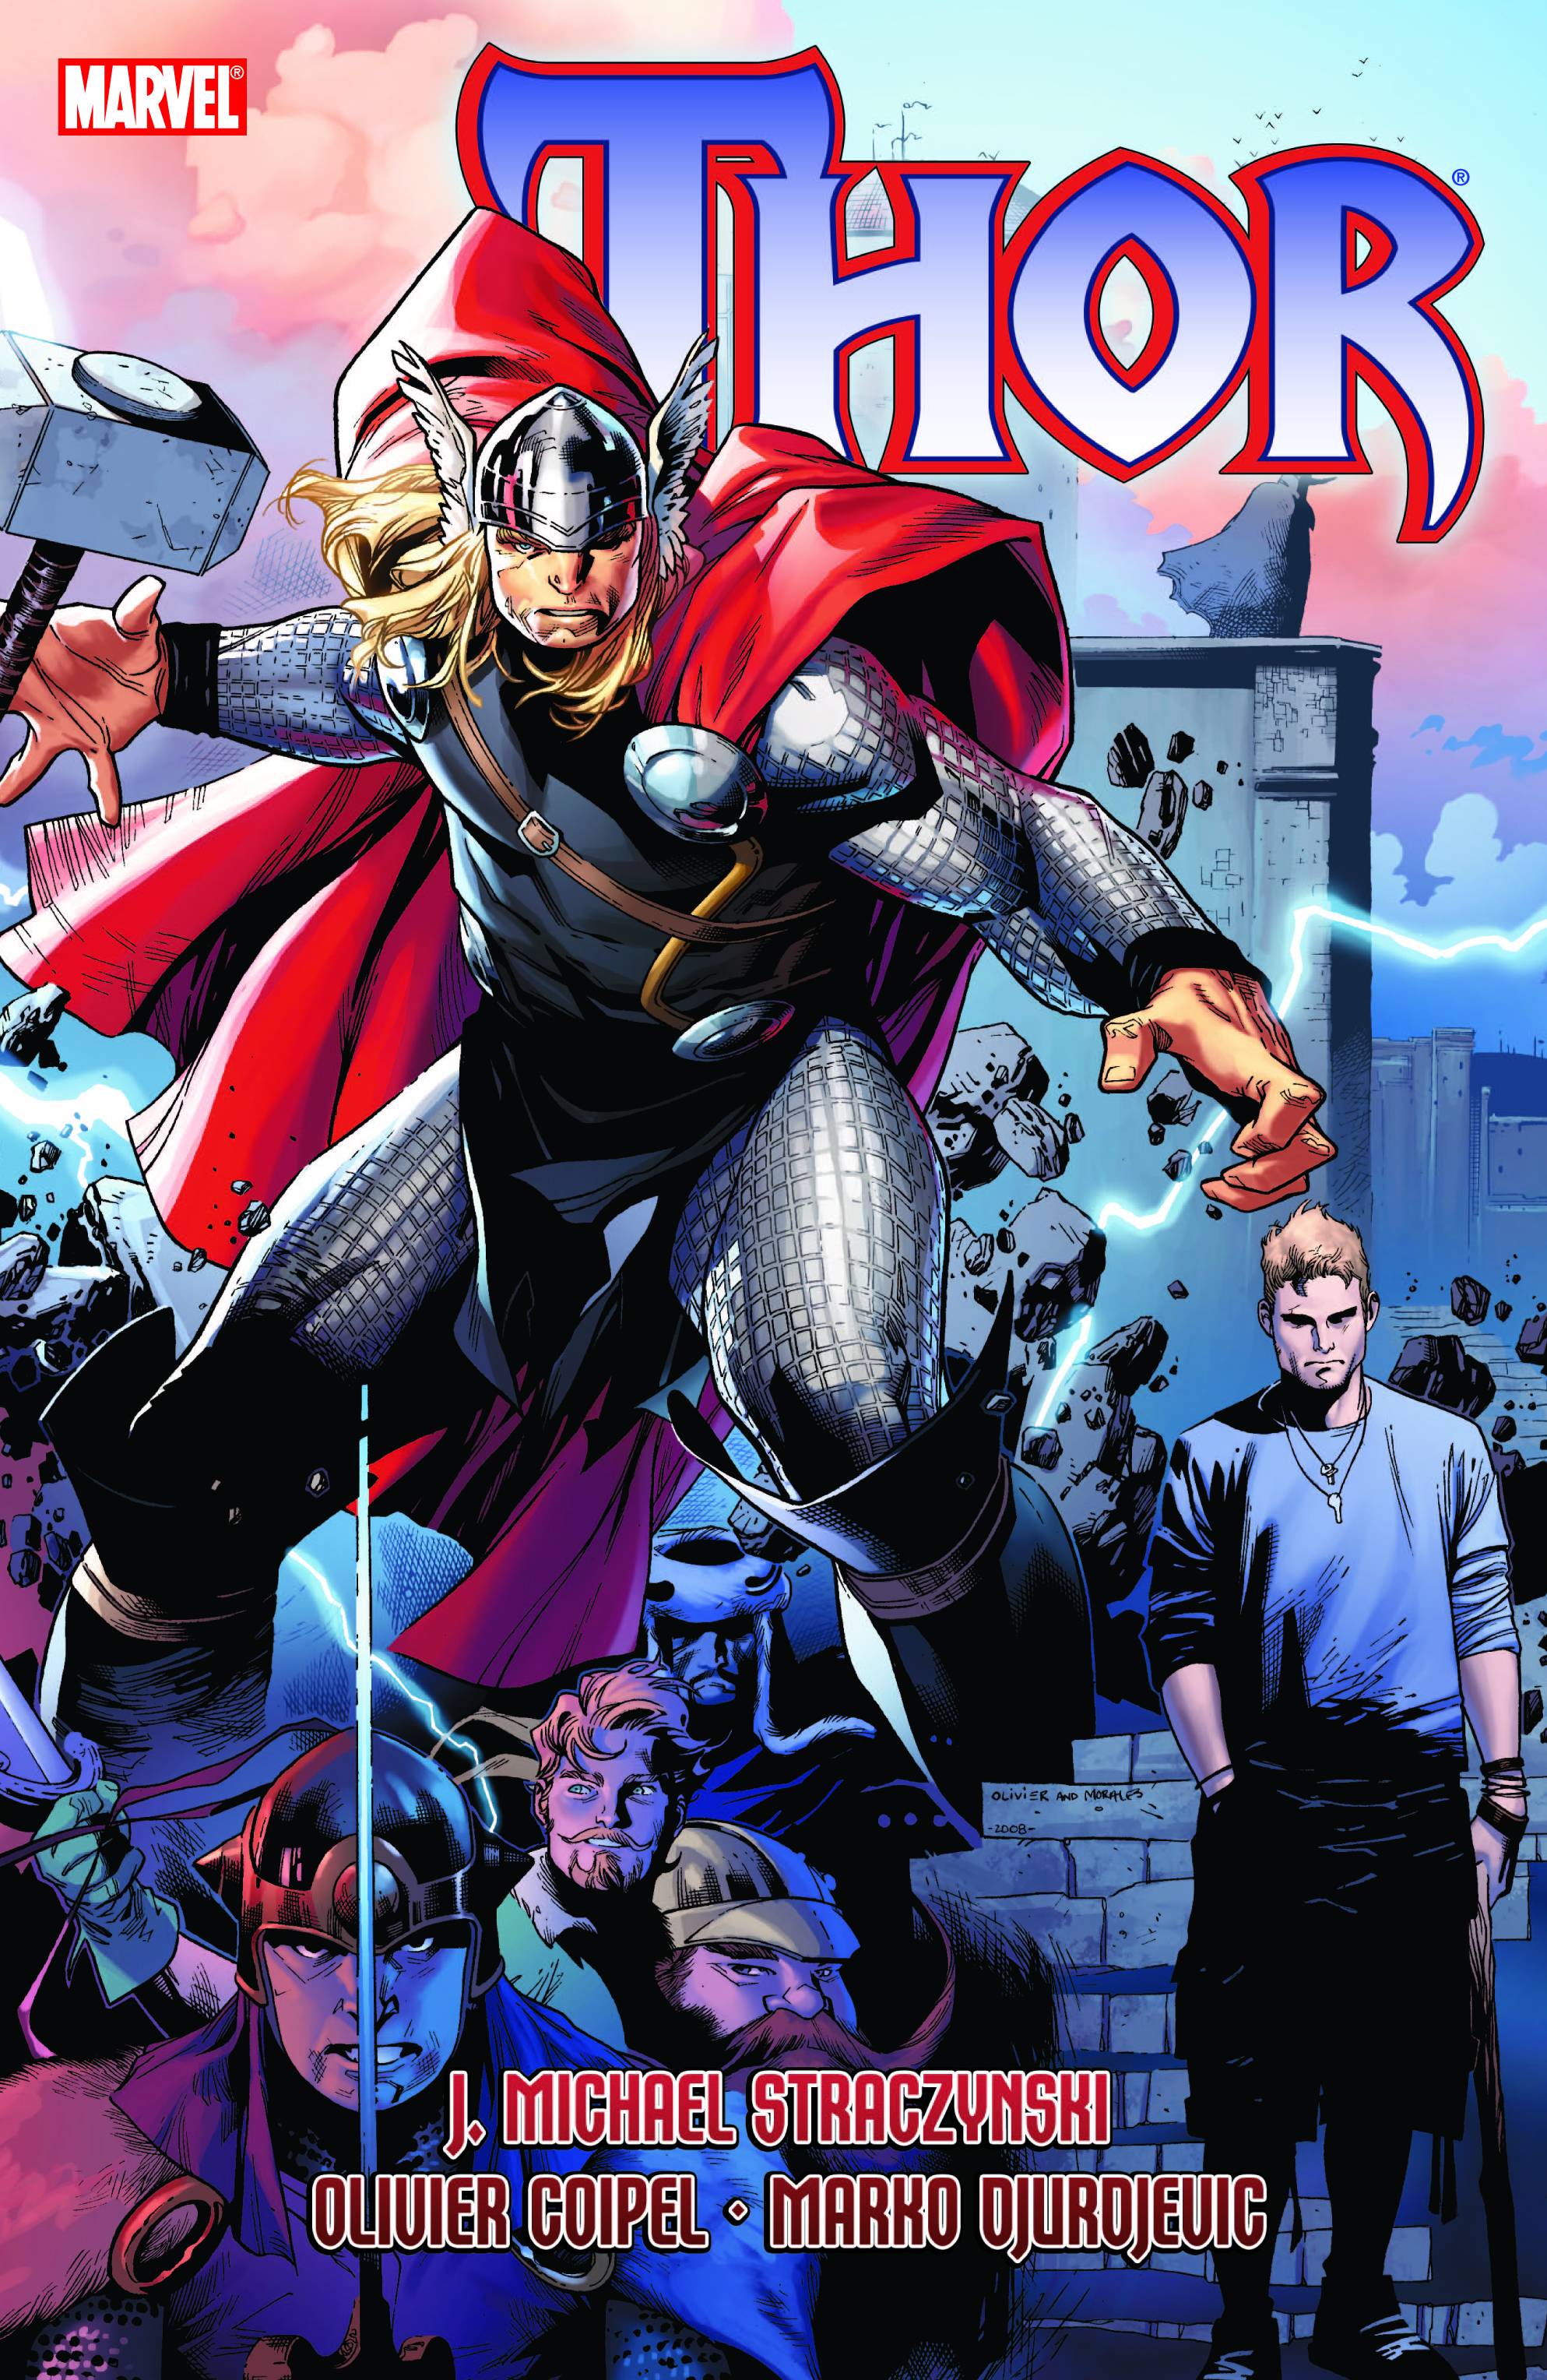 Thor by J. Michael Straczynski Volume 2 Graphic Novel